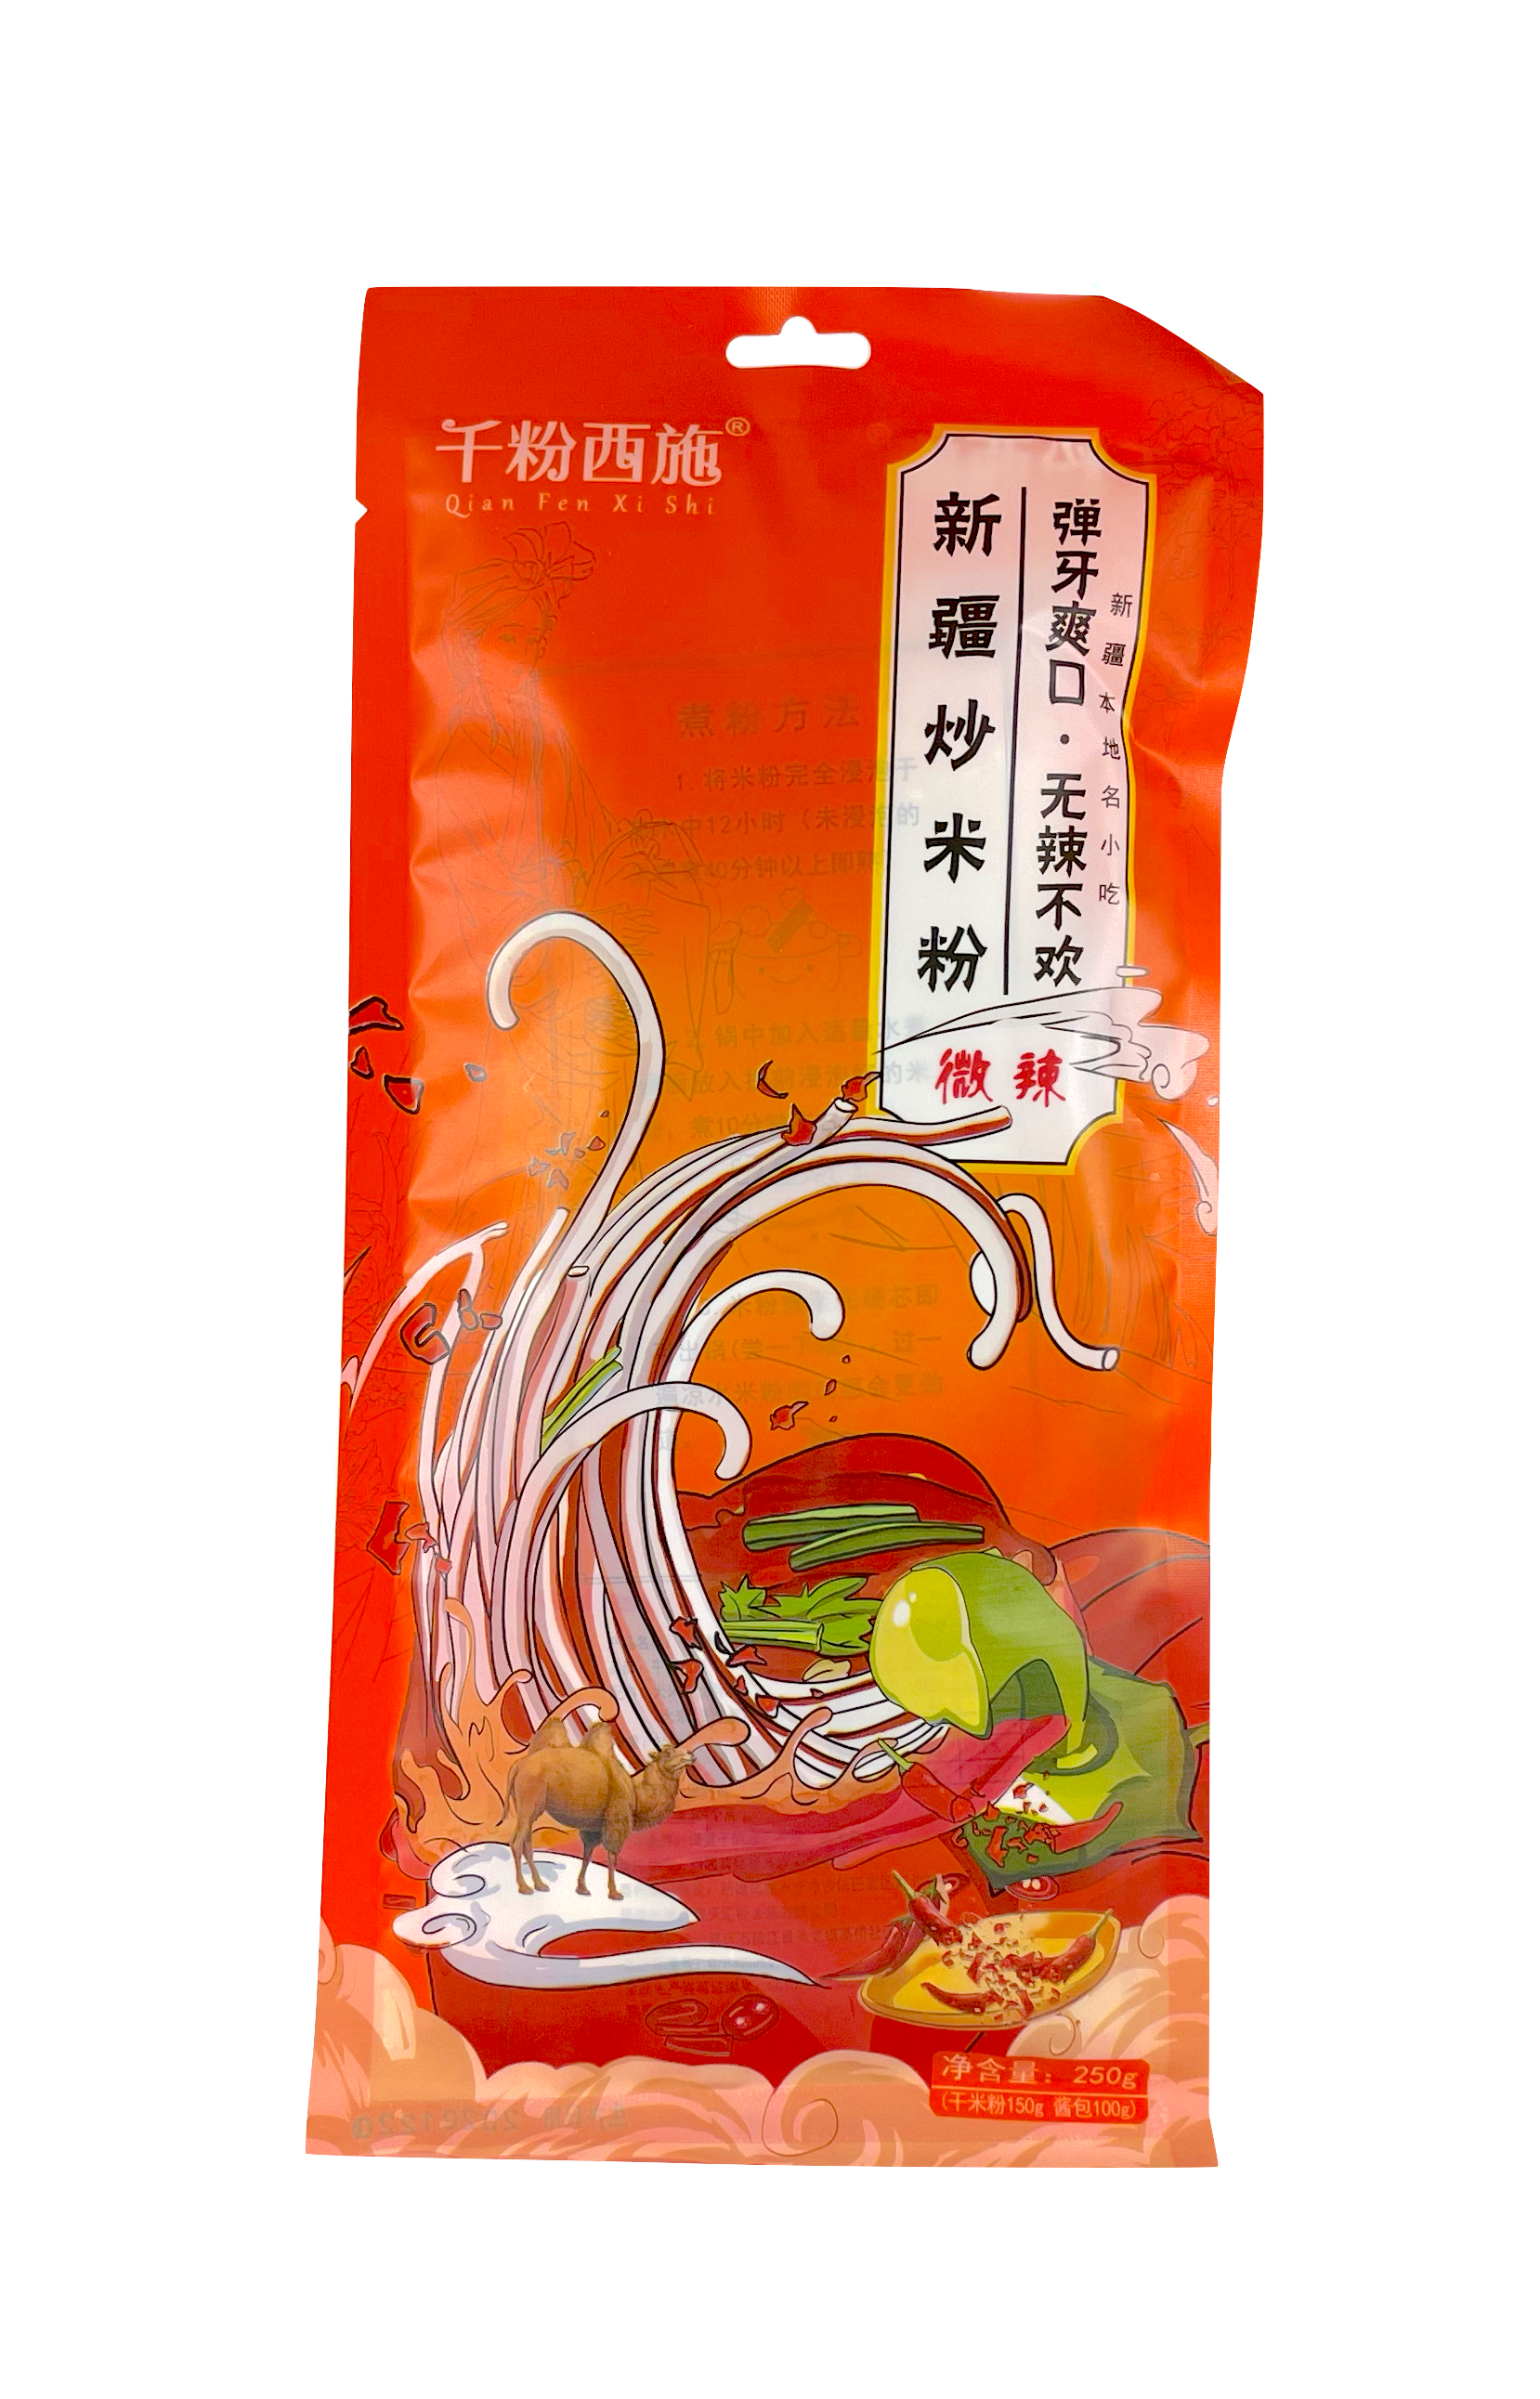 Risnudlar Med Lätt Chili Smak 250g Wei La-Qian Fen Xi Shi Kina